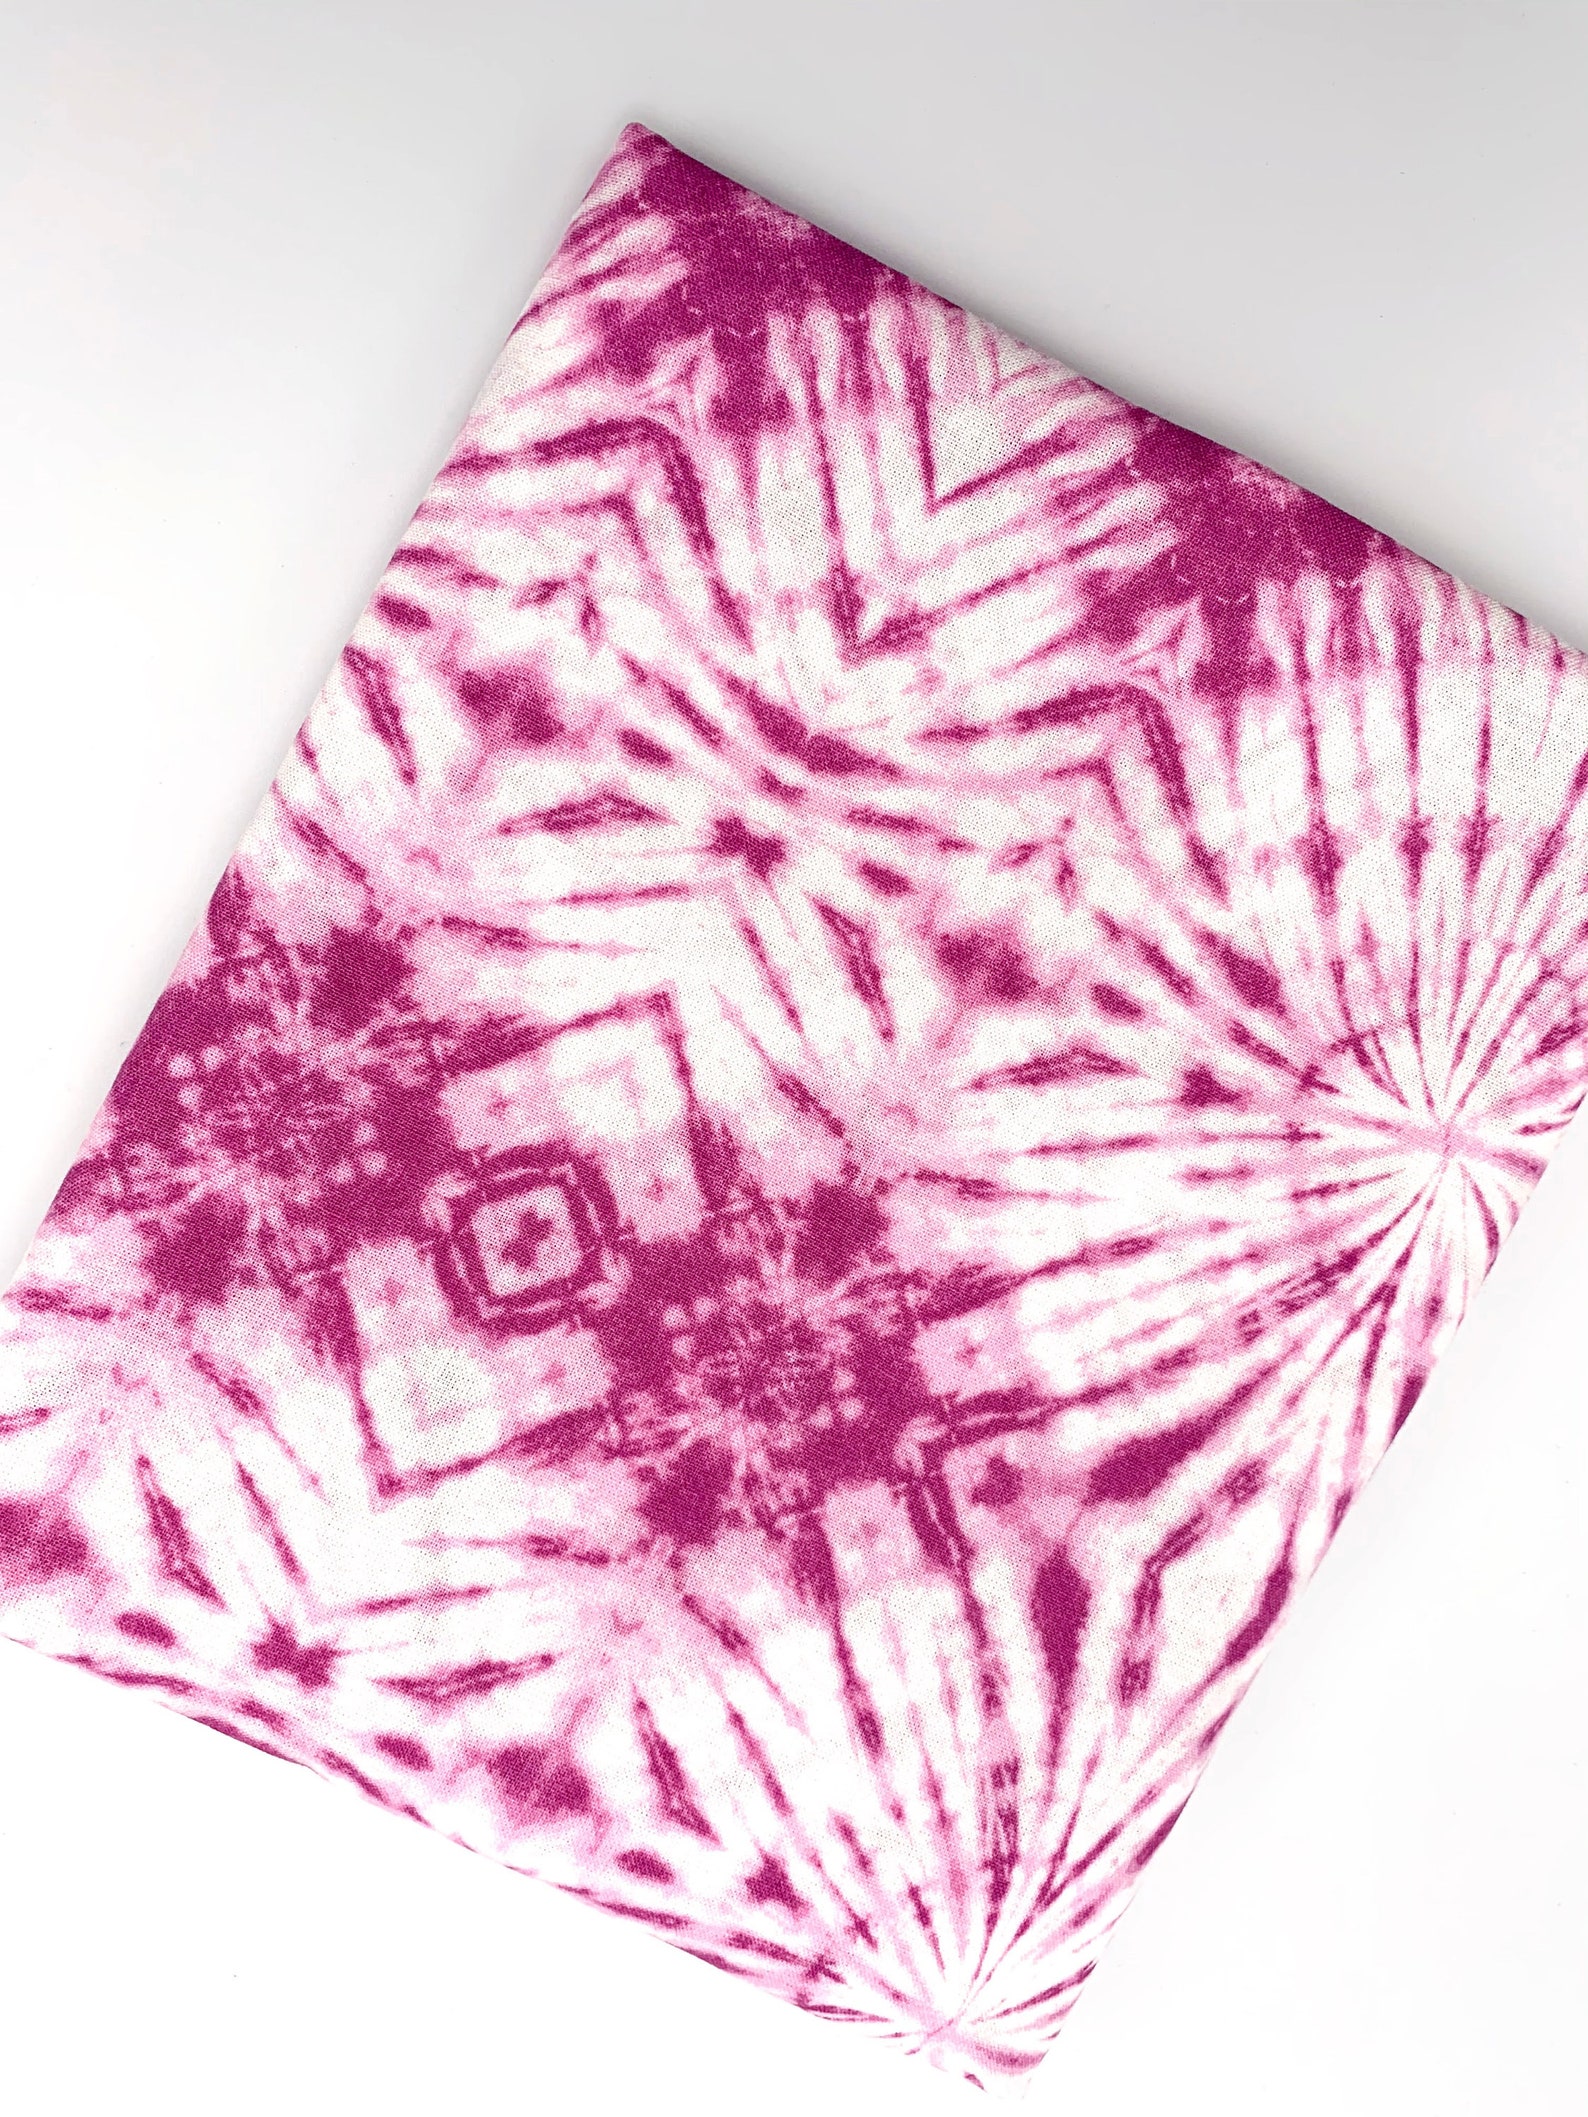 Tie Dye 100% Cotton Fabric Pink Purple White Acid Wash Hippie - Etsy